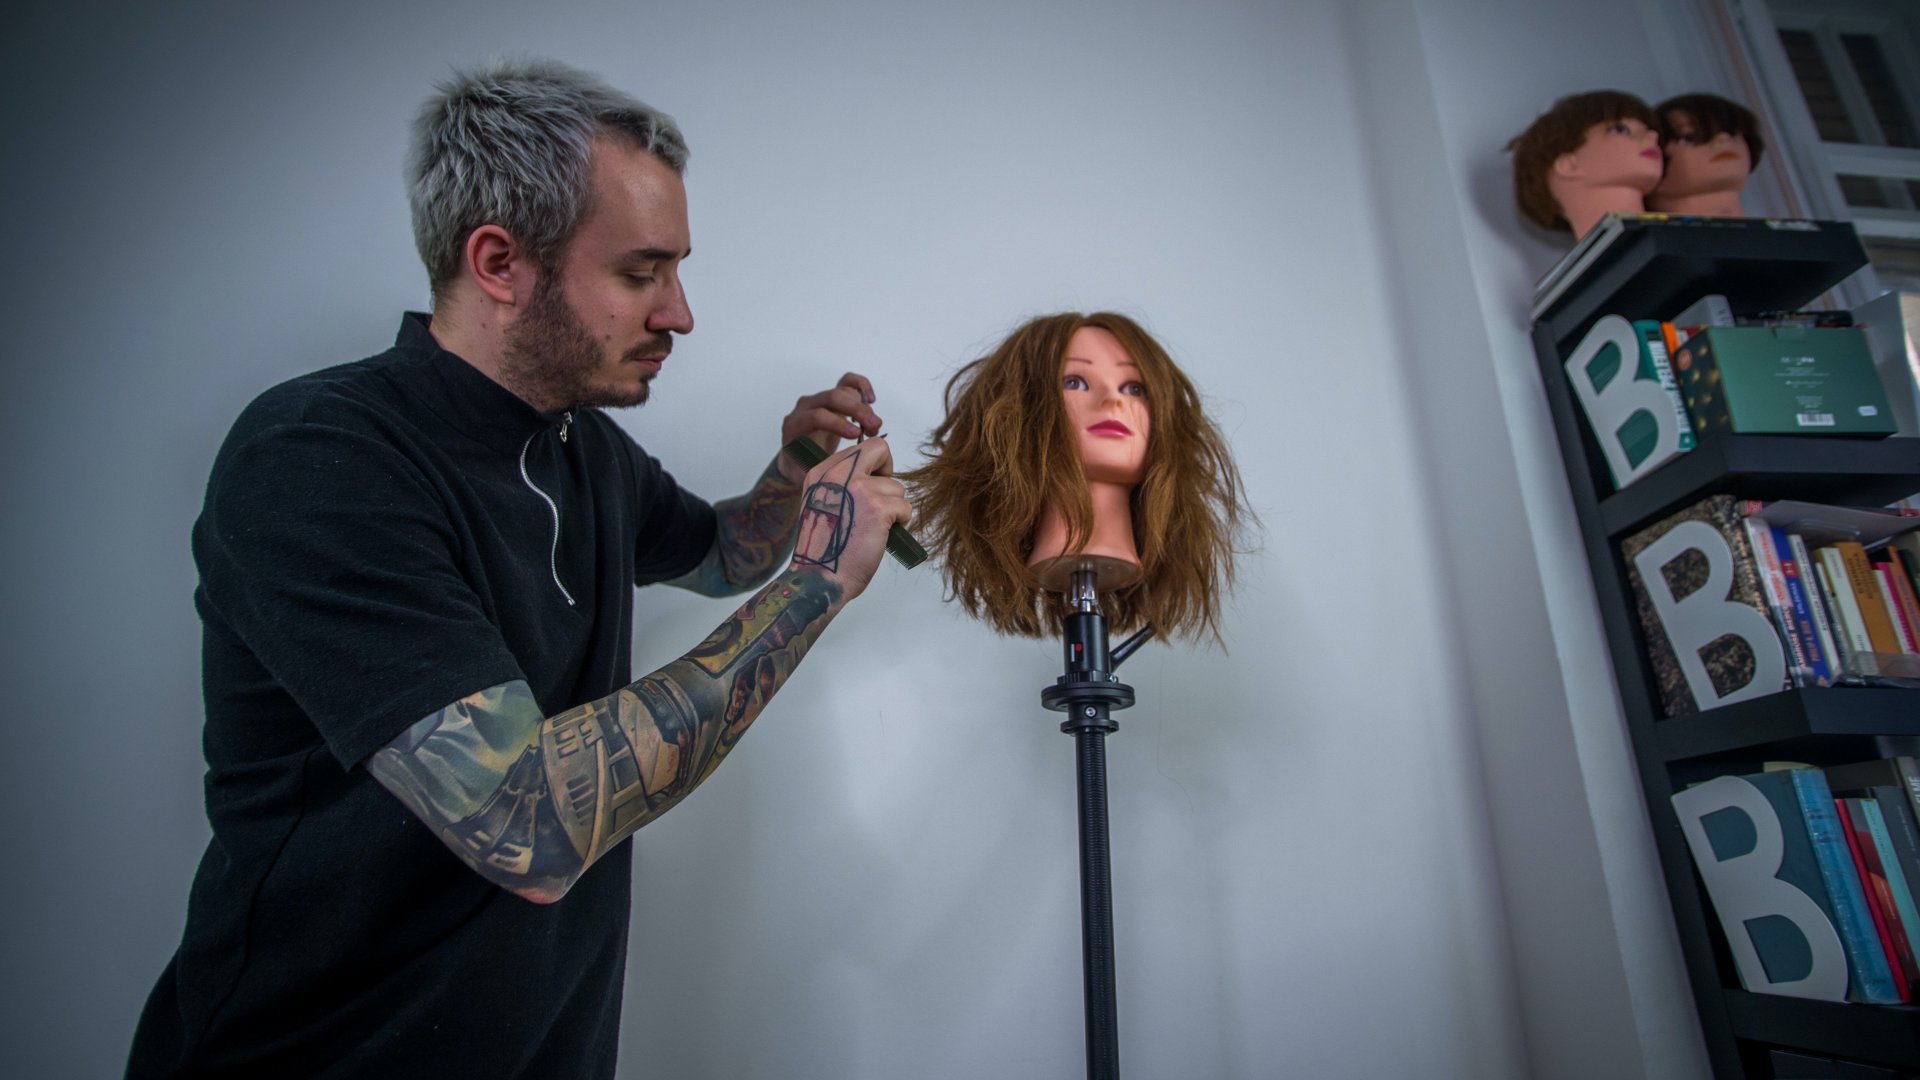 A koronavírus-járvány miatt önkéntes karanténban lévő fodrász oktatóvideót készít egy gyakorlásra használt babafej haját vágva budapesti otthonában 2020. március 26-án (Fotó: MTI/Balogh Zoltán)